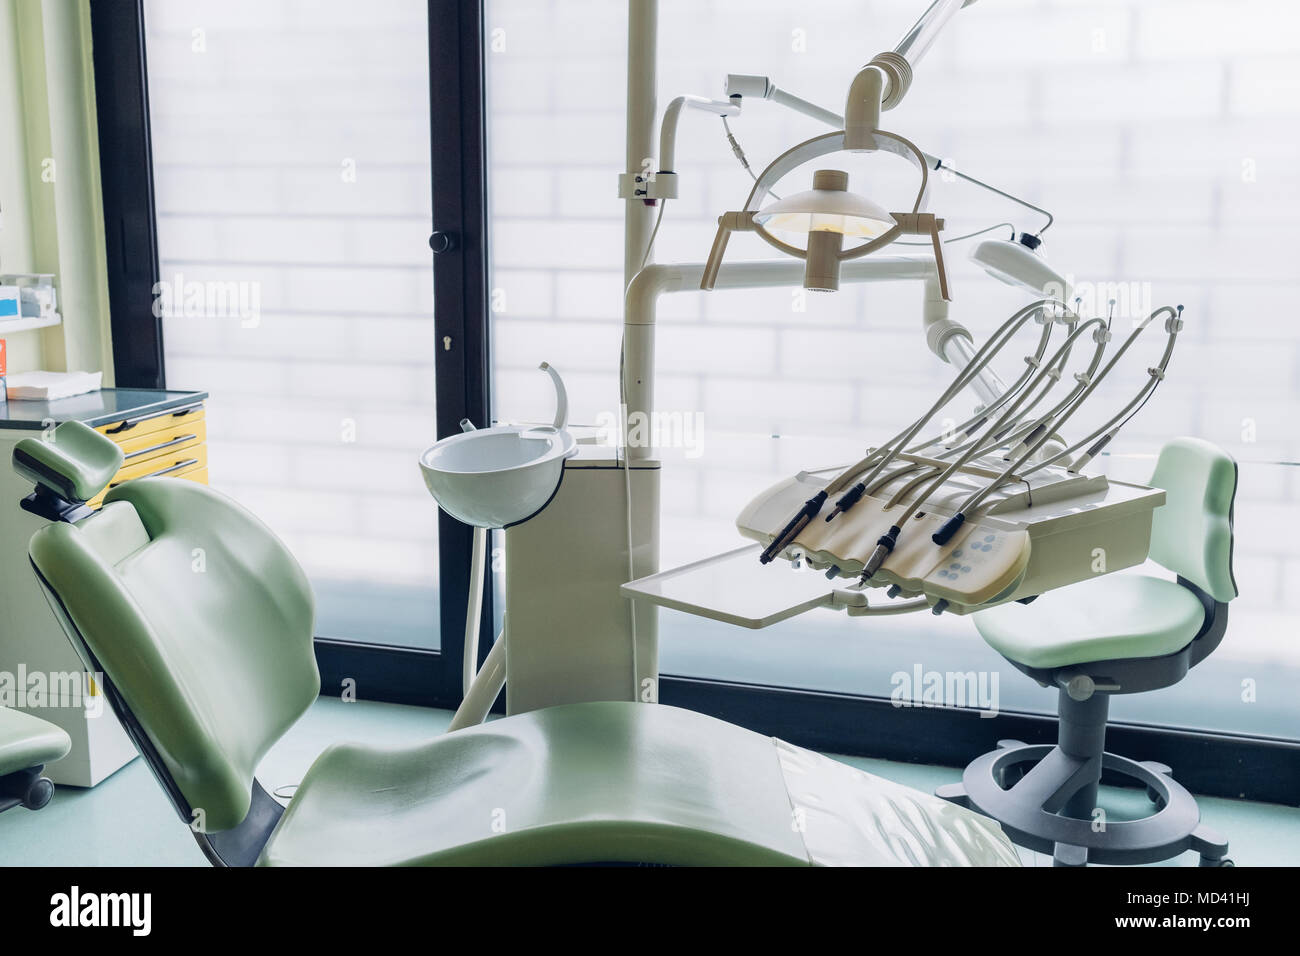 Zahnarzt Stuhl und Ausrüstung in der Zahnarztpraxis Stockfotografie - Alamy